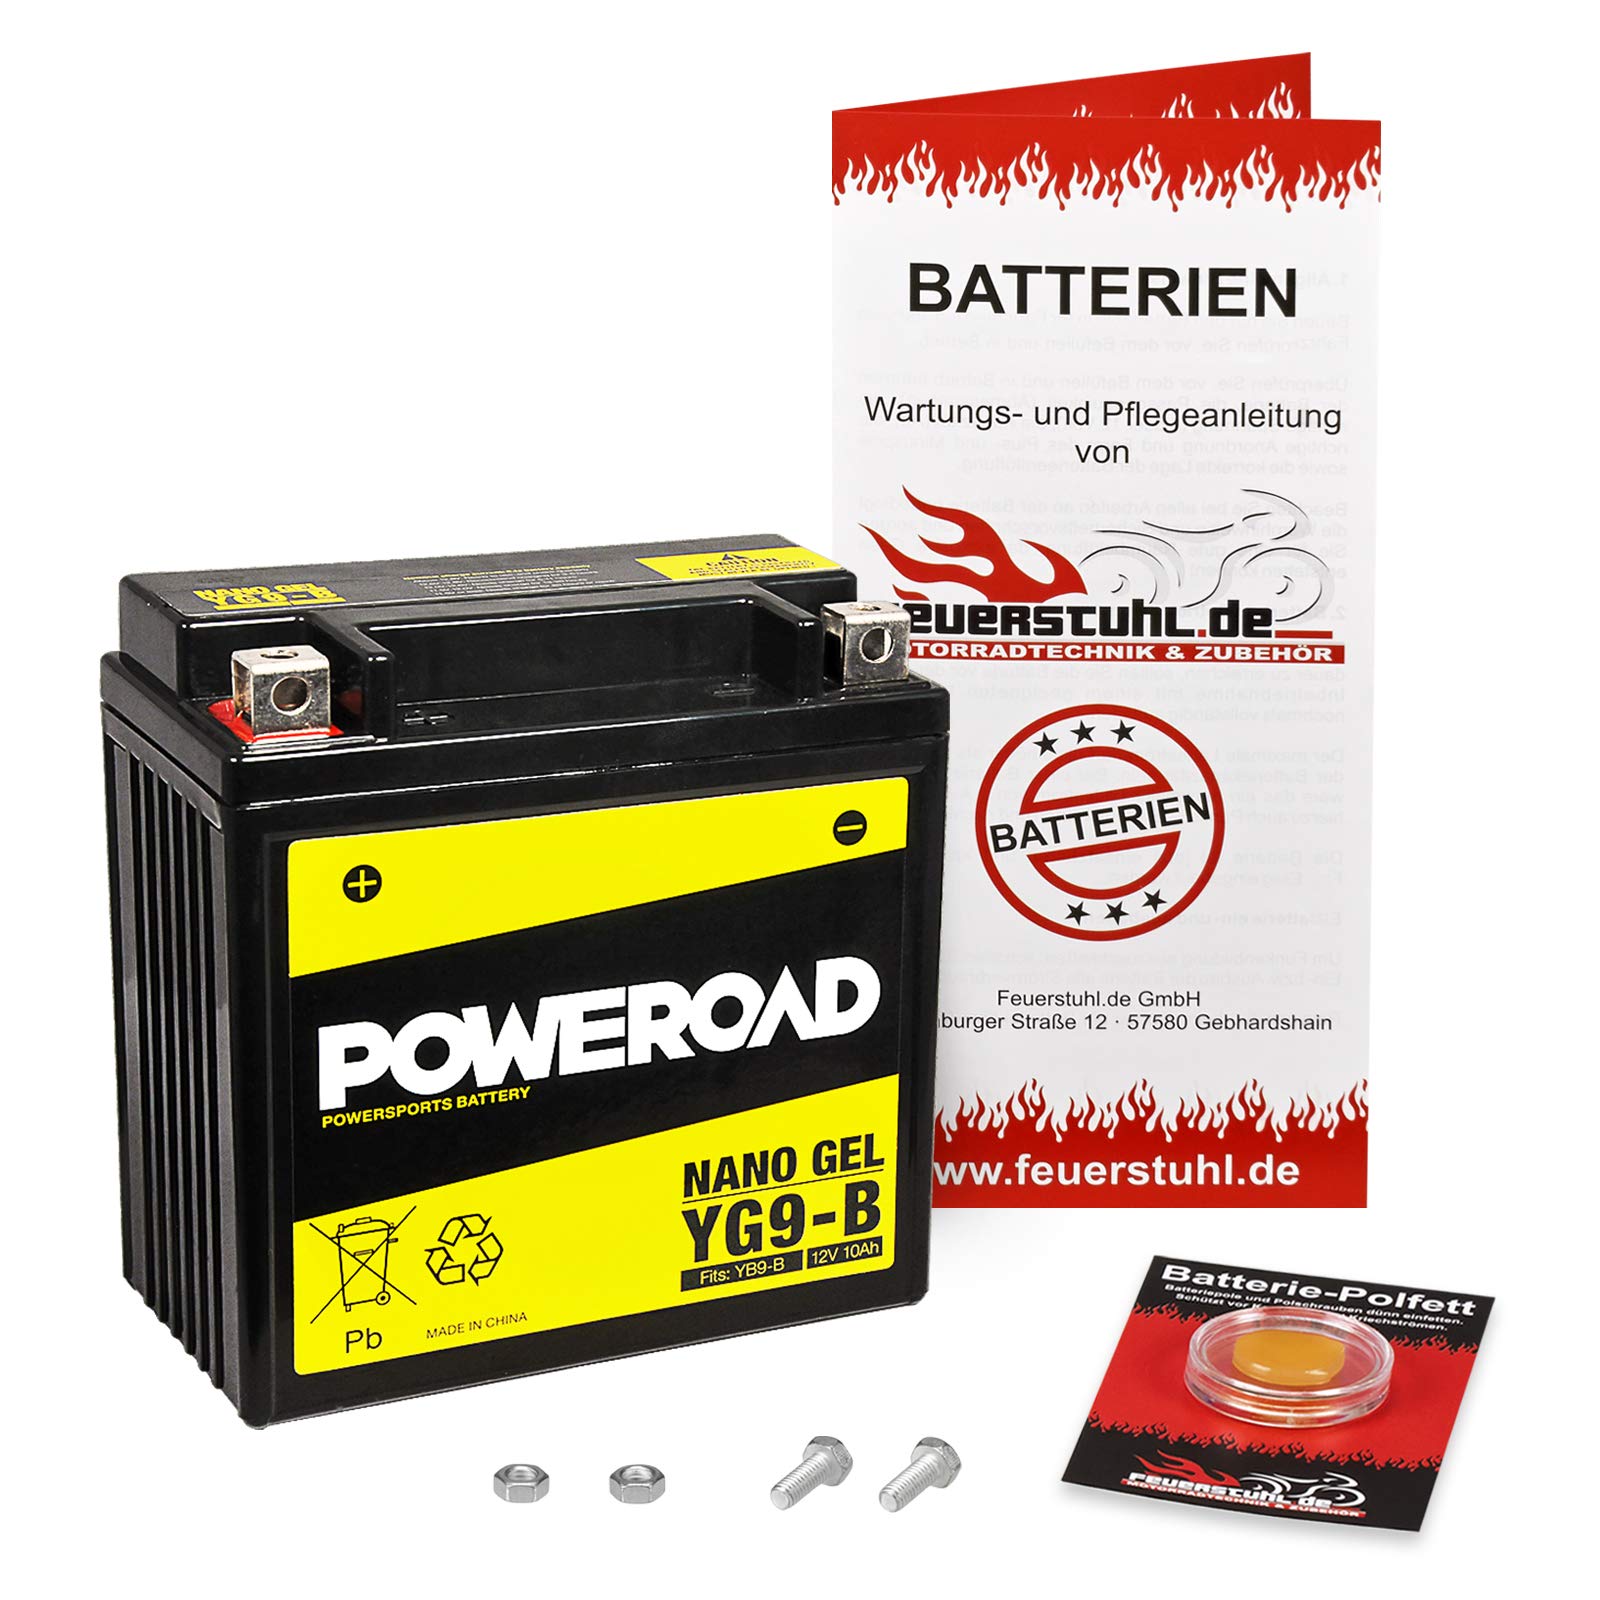 Gel-Batterie für Kawasaki Eliminator 125 (BN125A) wartungsfrei, einbaufertig, startklar, inkl. 7,50€ Pfand von Feuerstuhl.de GmbH